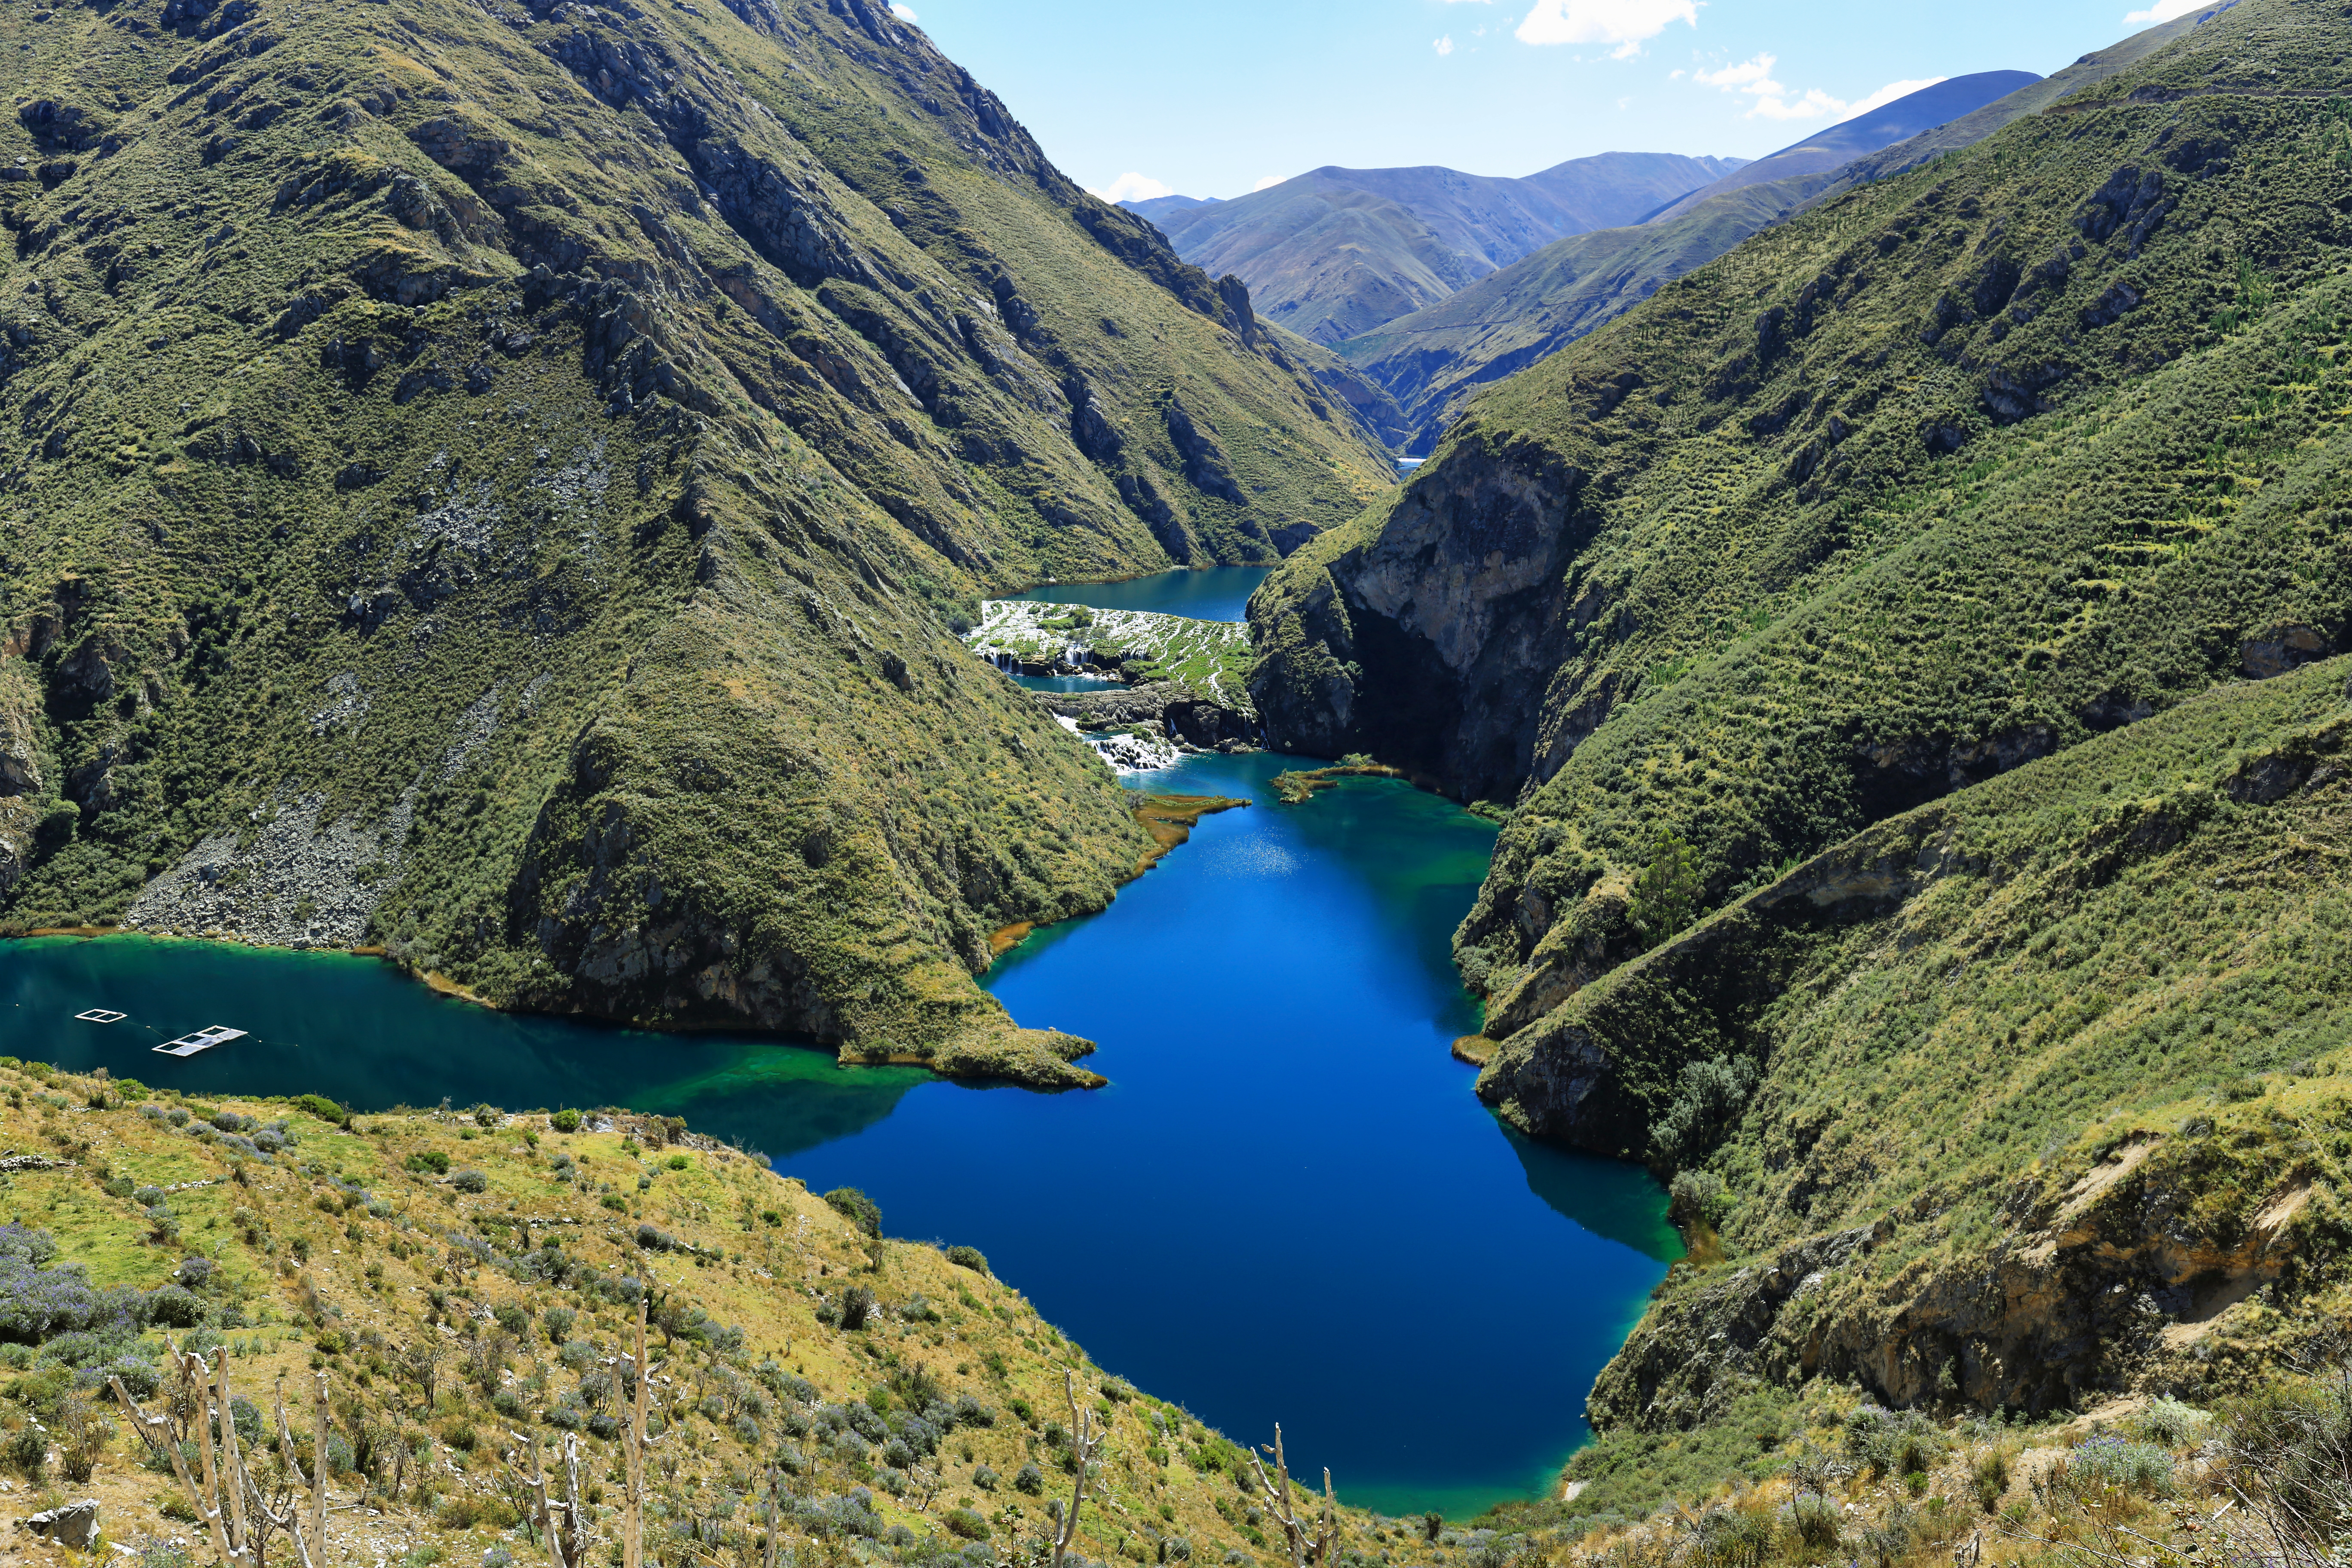 Soluciones basadas en la Naturaleza para el desarrollo sostenible y resiliente en el Perú